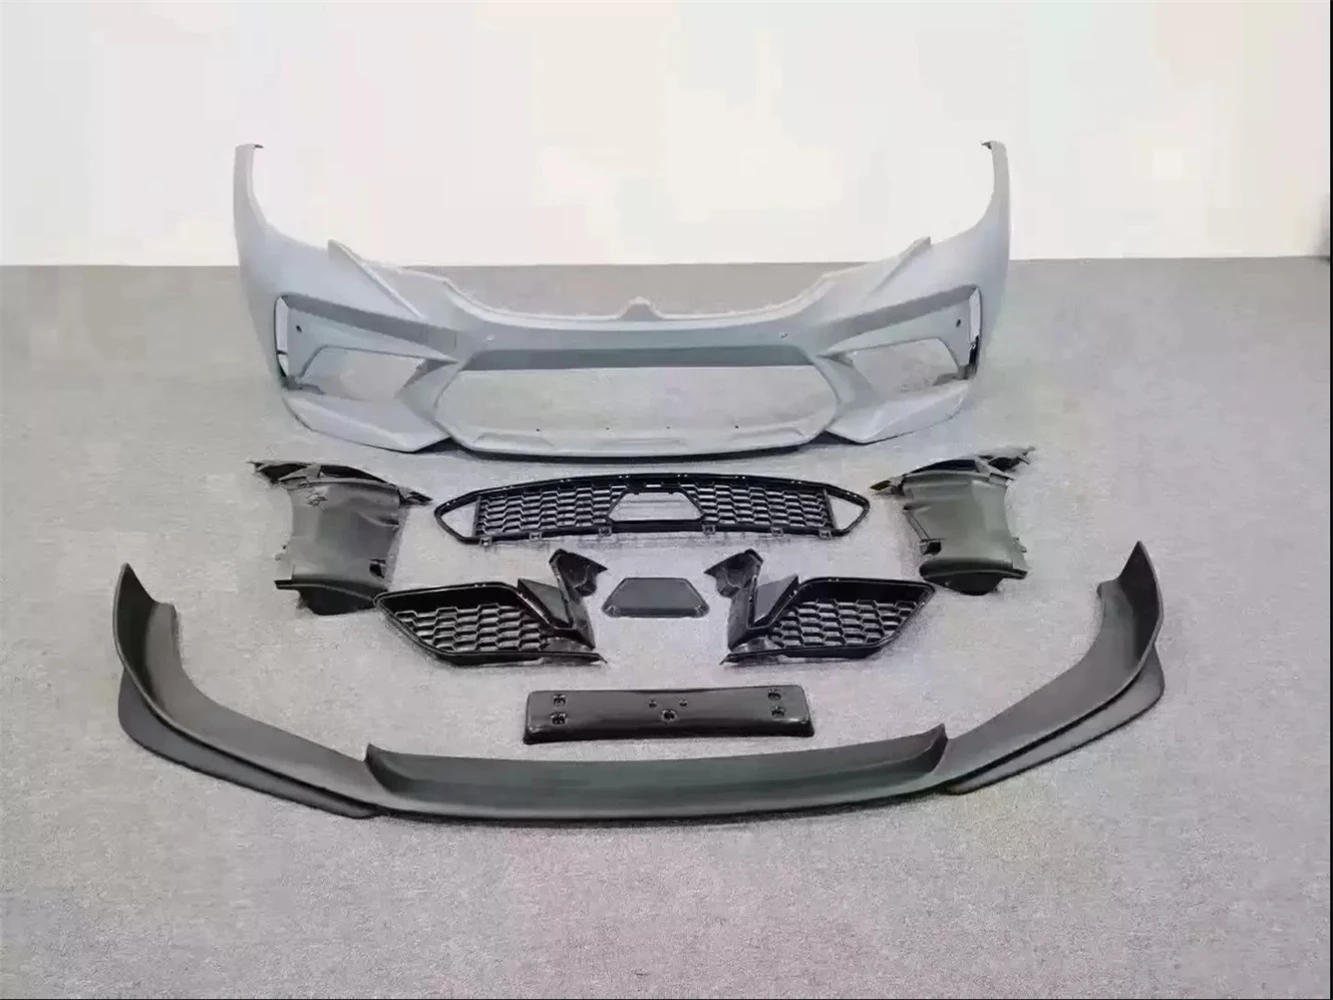 Araba Surround Gövde Kiti ön tampon BMW 3 serisi için g20 g28 modifiye m3C ön dudak izgara izgara sis lambası kapağı çamurluk